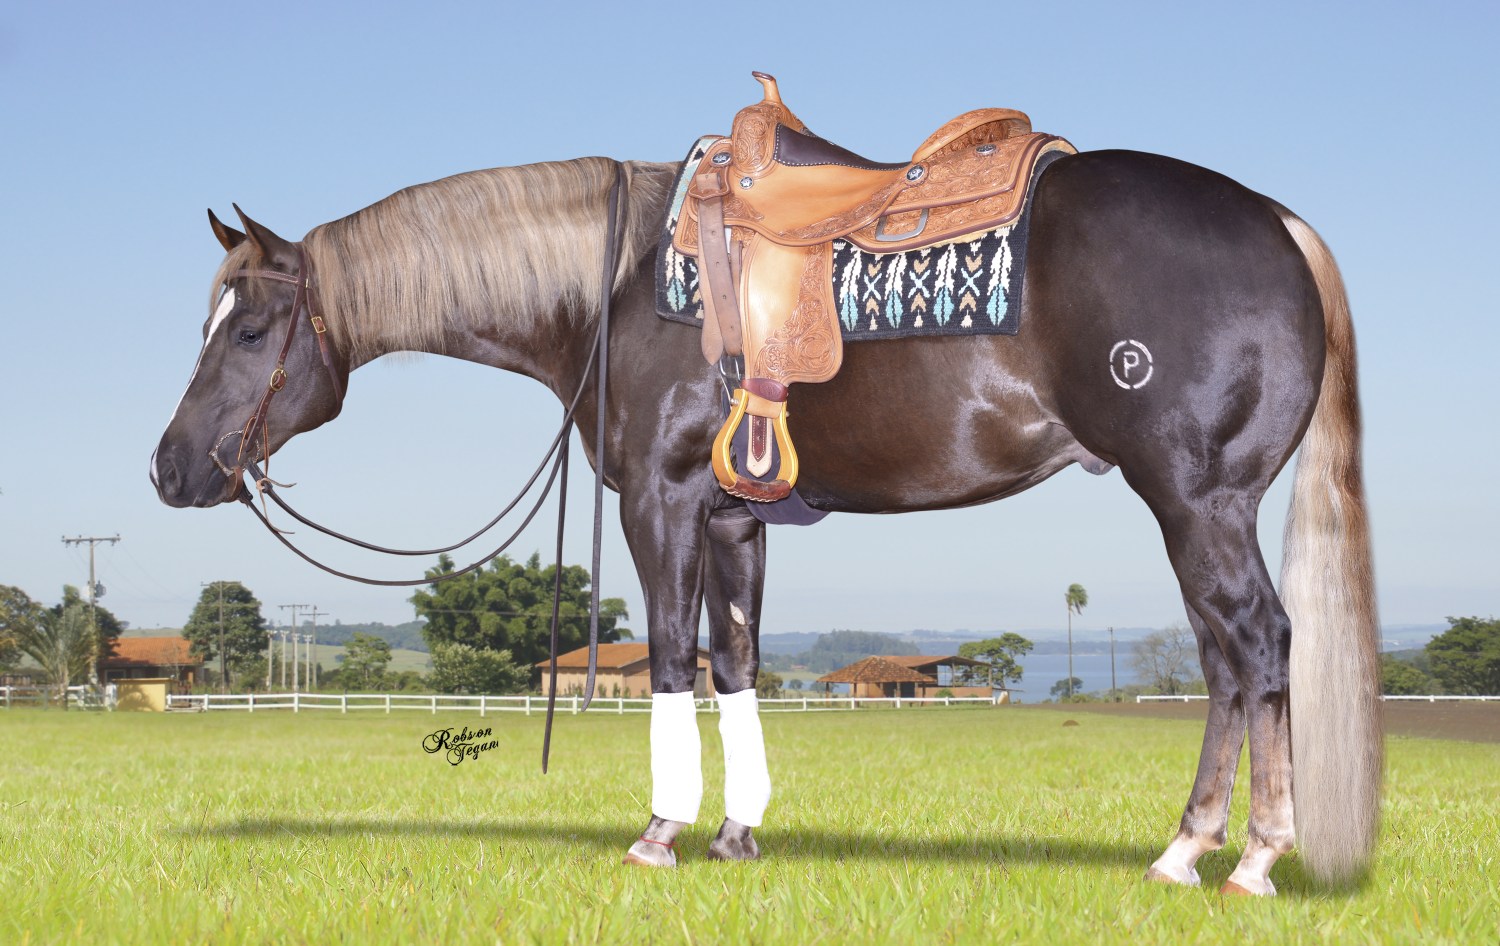 Big John Del Rancho possui o perfil ideal de um cavalo de Rédeas